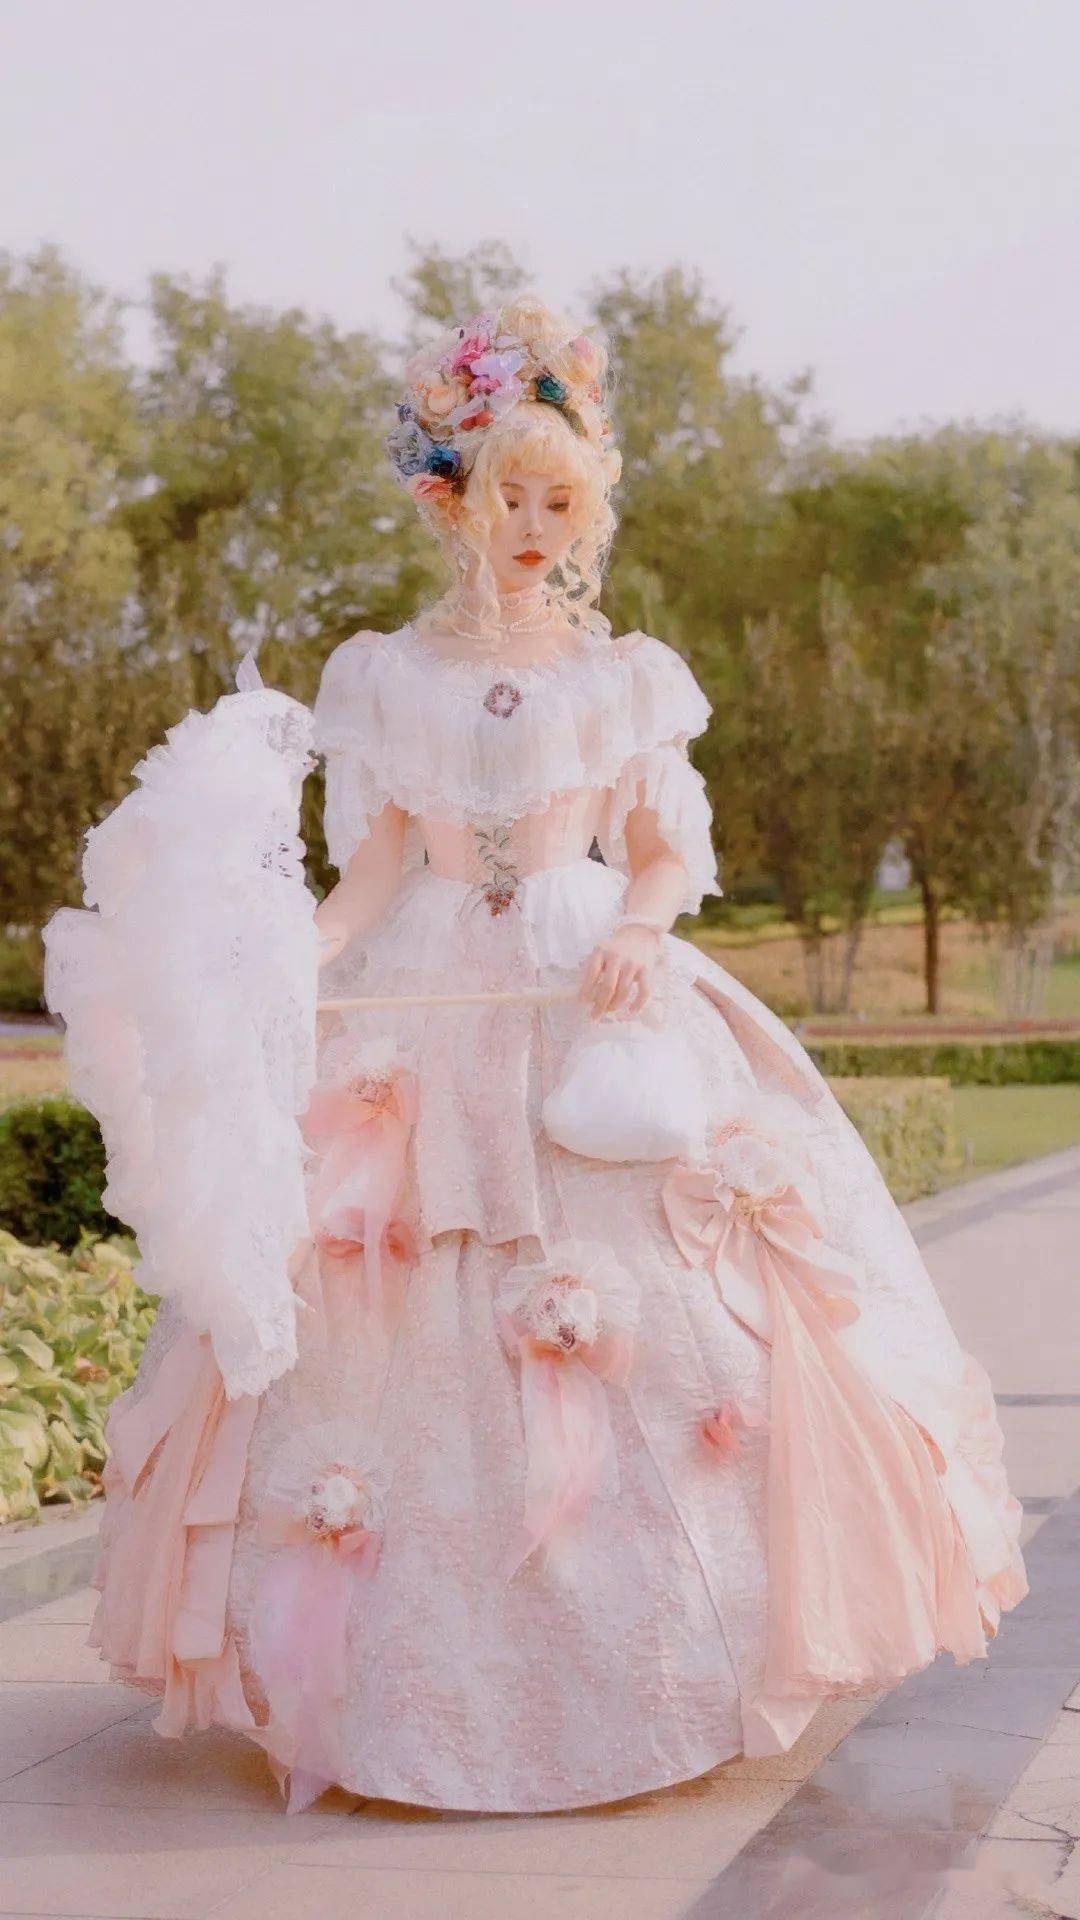 穿lolita被认为是公主?这届路人的彩虹屁也太甜了!